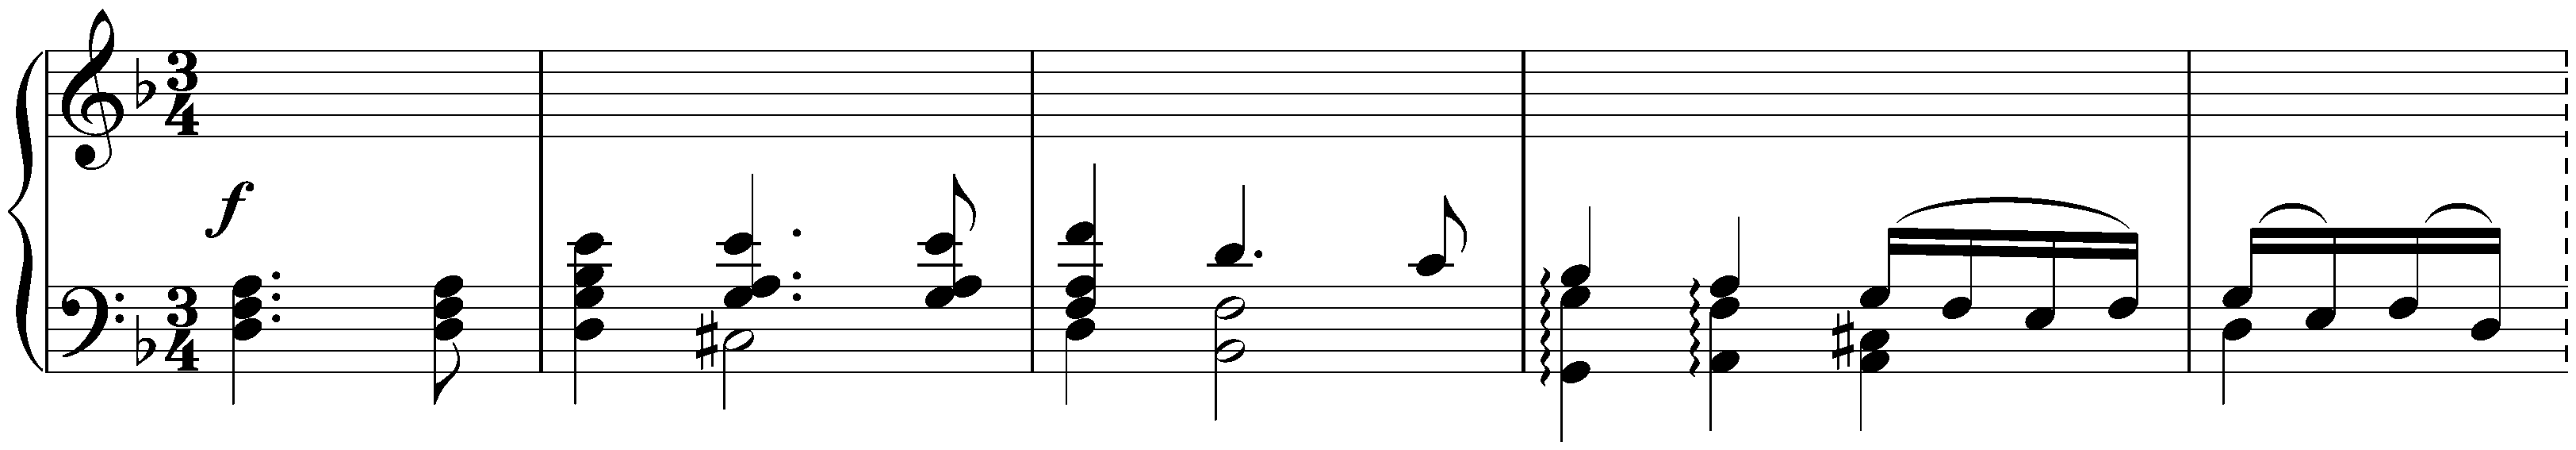 Chaconne in D minor, Anh. Ia/1/V (Johann Sebastian Bach)